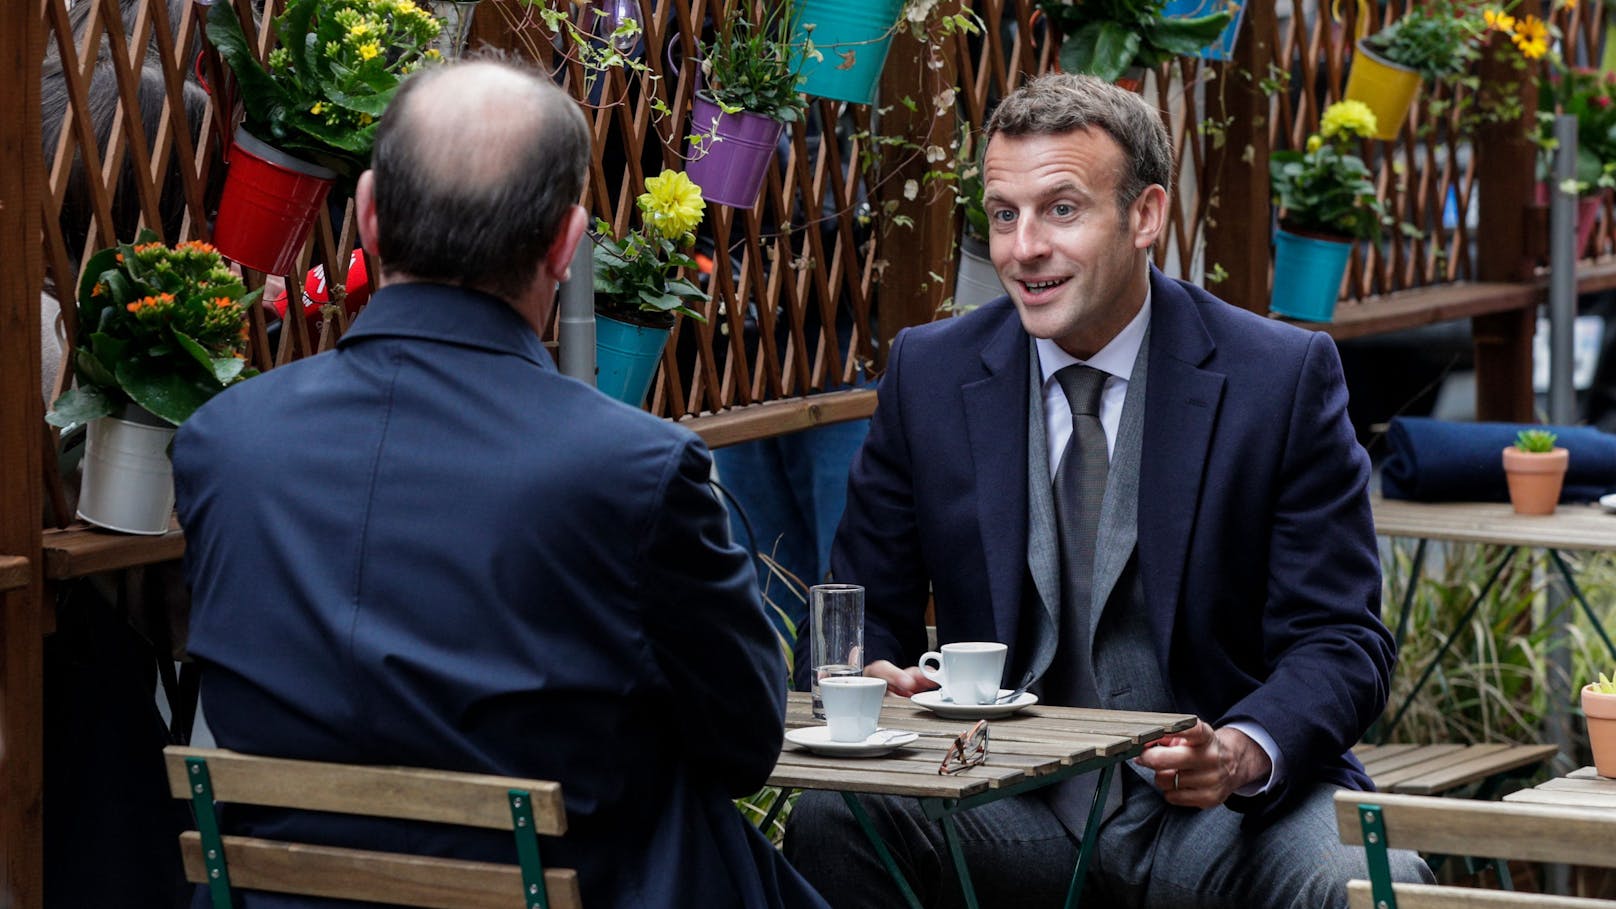 Angesichts steigender Corona-Infektionen hat Macron schärfere Regeln angekündigt.